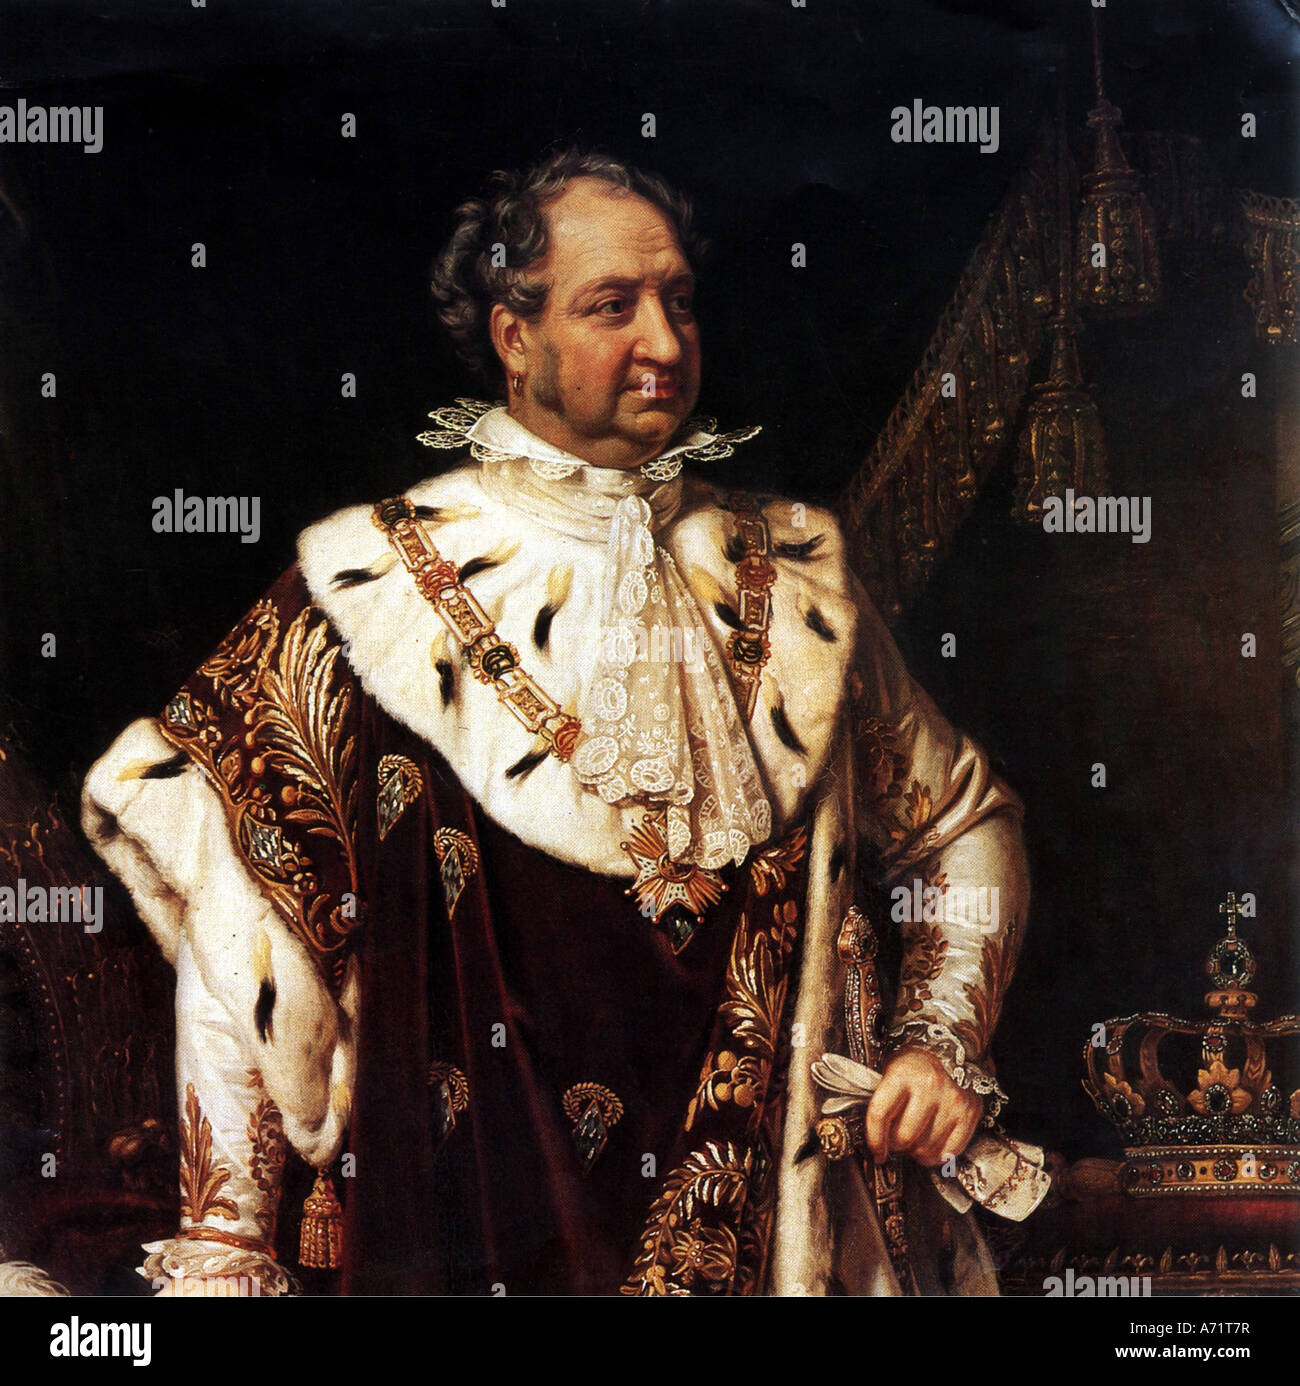 Maximilien I de Bavière, 27.5. 1756 - 13.10.1825, le roi de Bavière 1.1.1806 - 13.10.1825, portrait, à Coronation robes, après avoir pa Banque D'Images